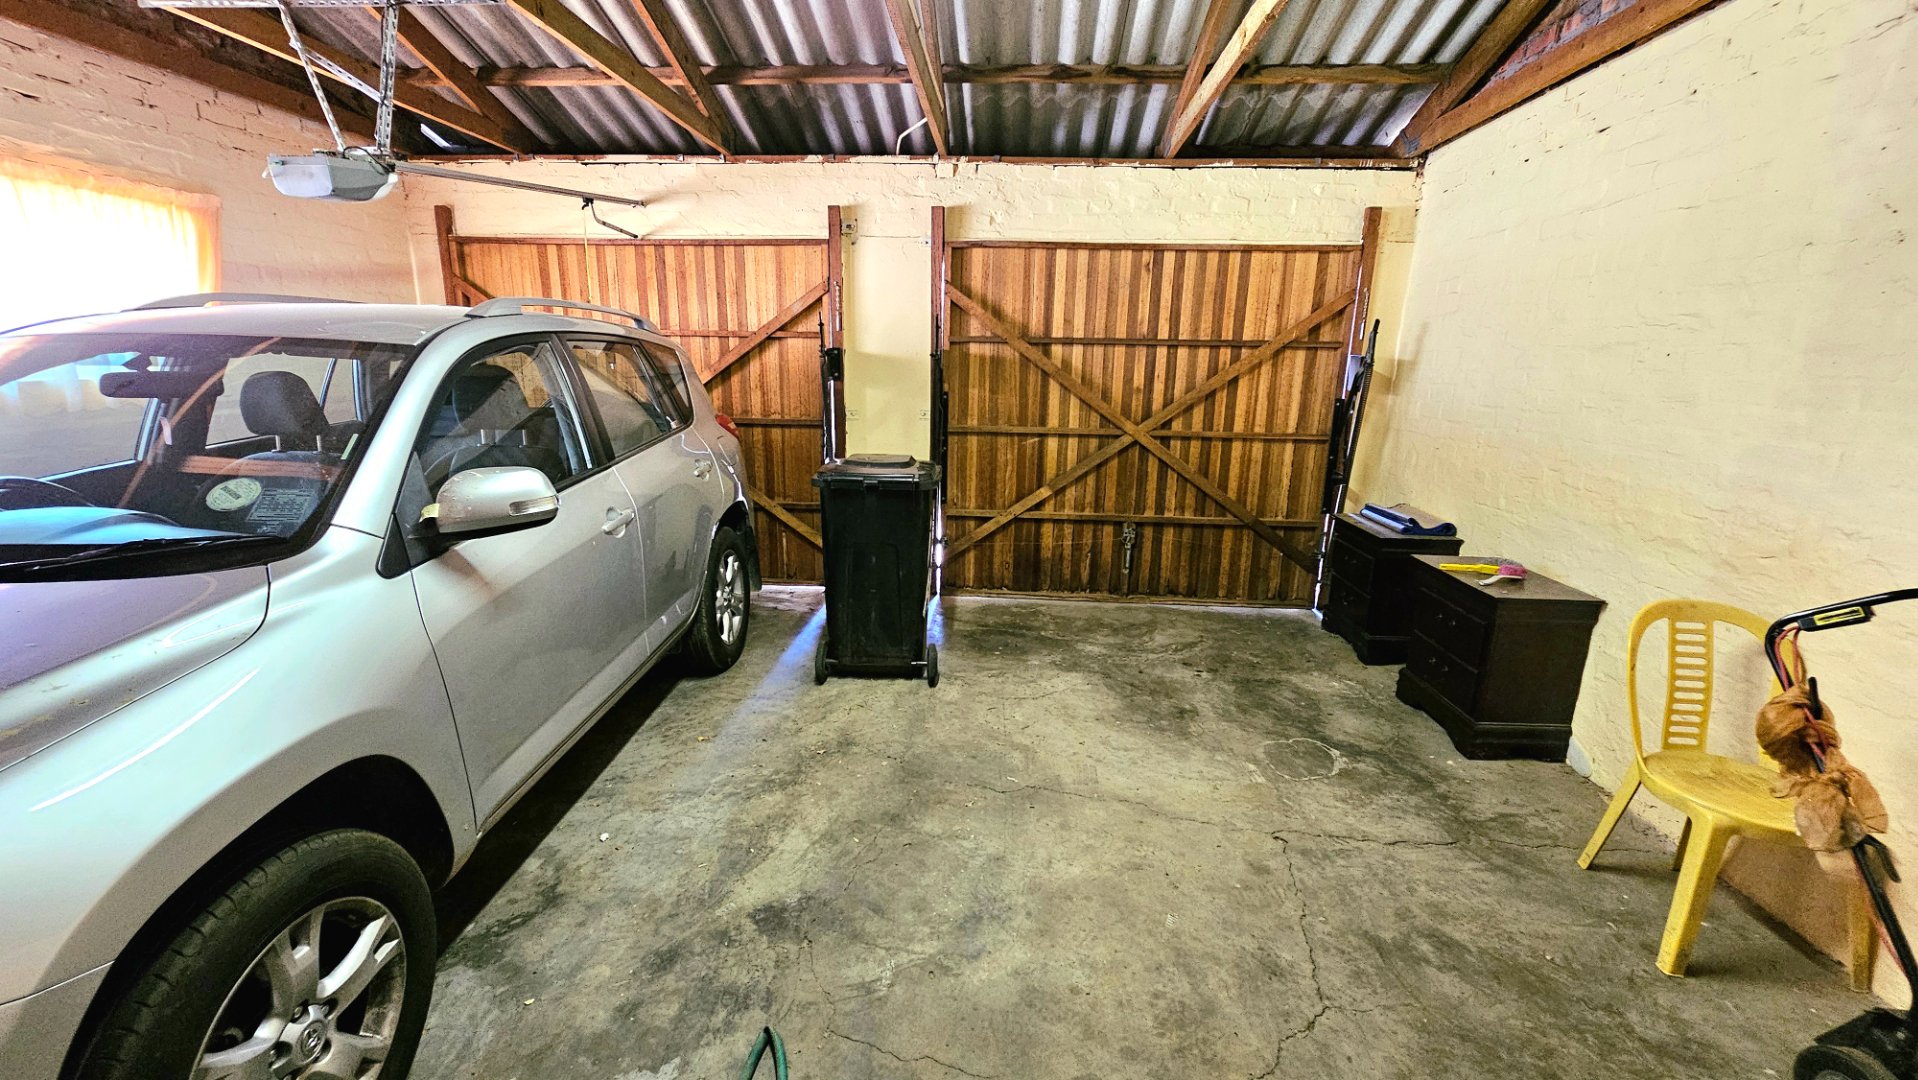 3 Bedroom Property for Sale in Van Riebeeck Park Western Cape